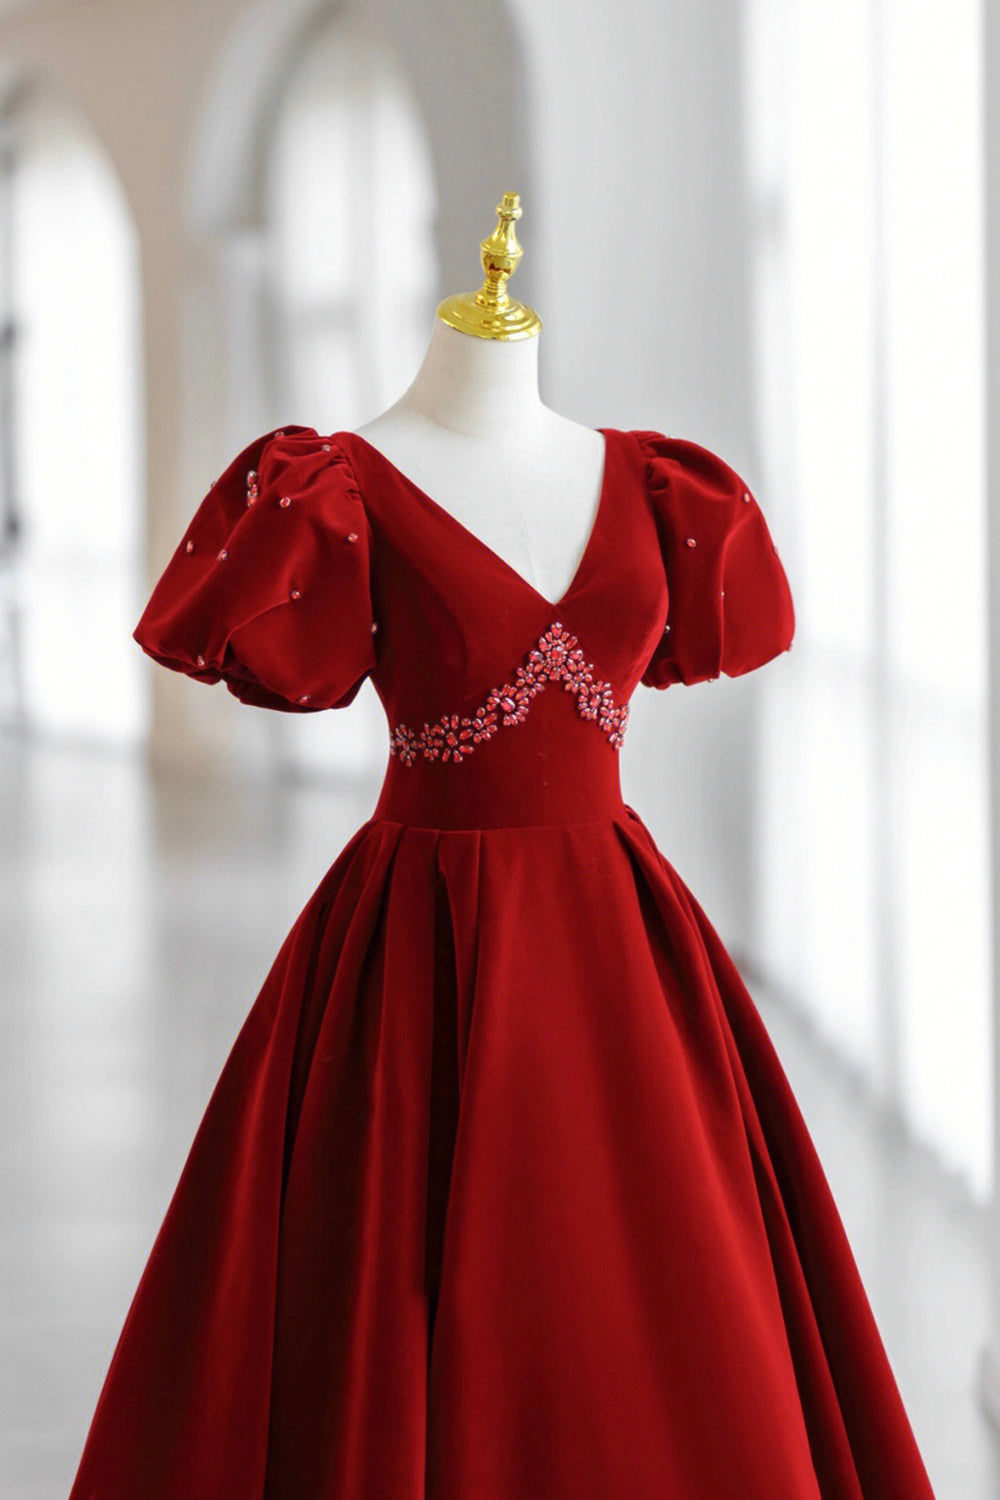 Burgundy V-Neck Velvet Long Formal Dress, A-Line Short Sleeve Evening Dress